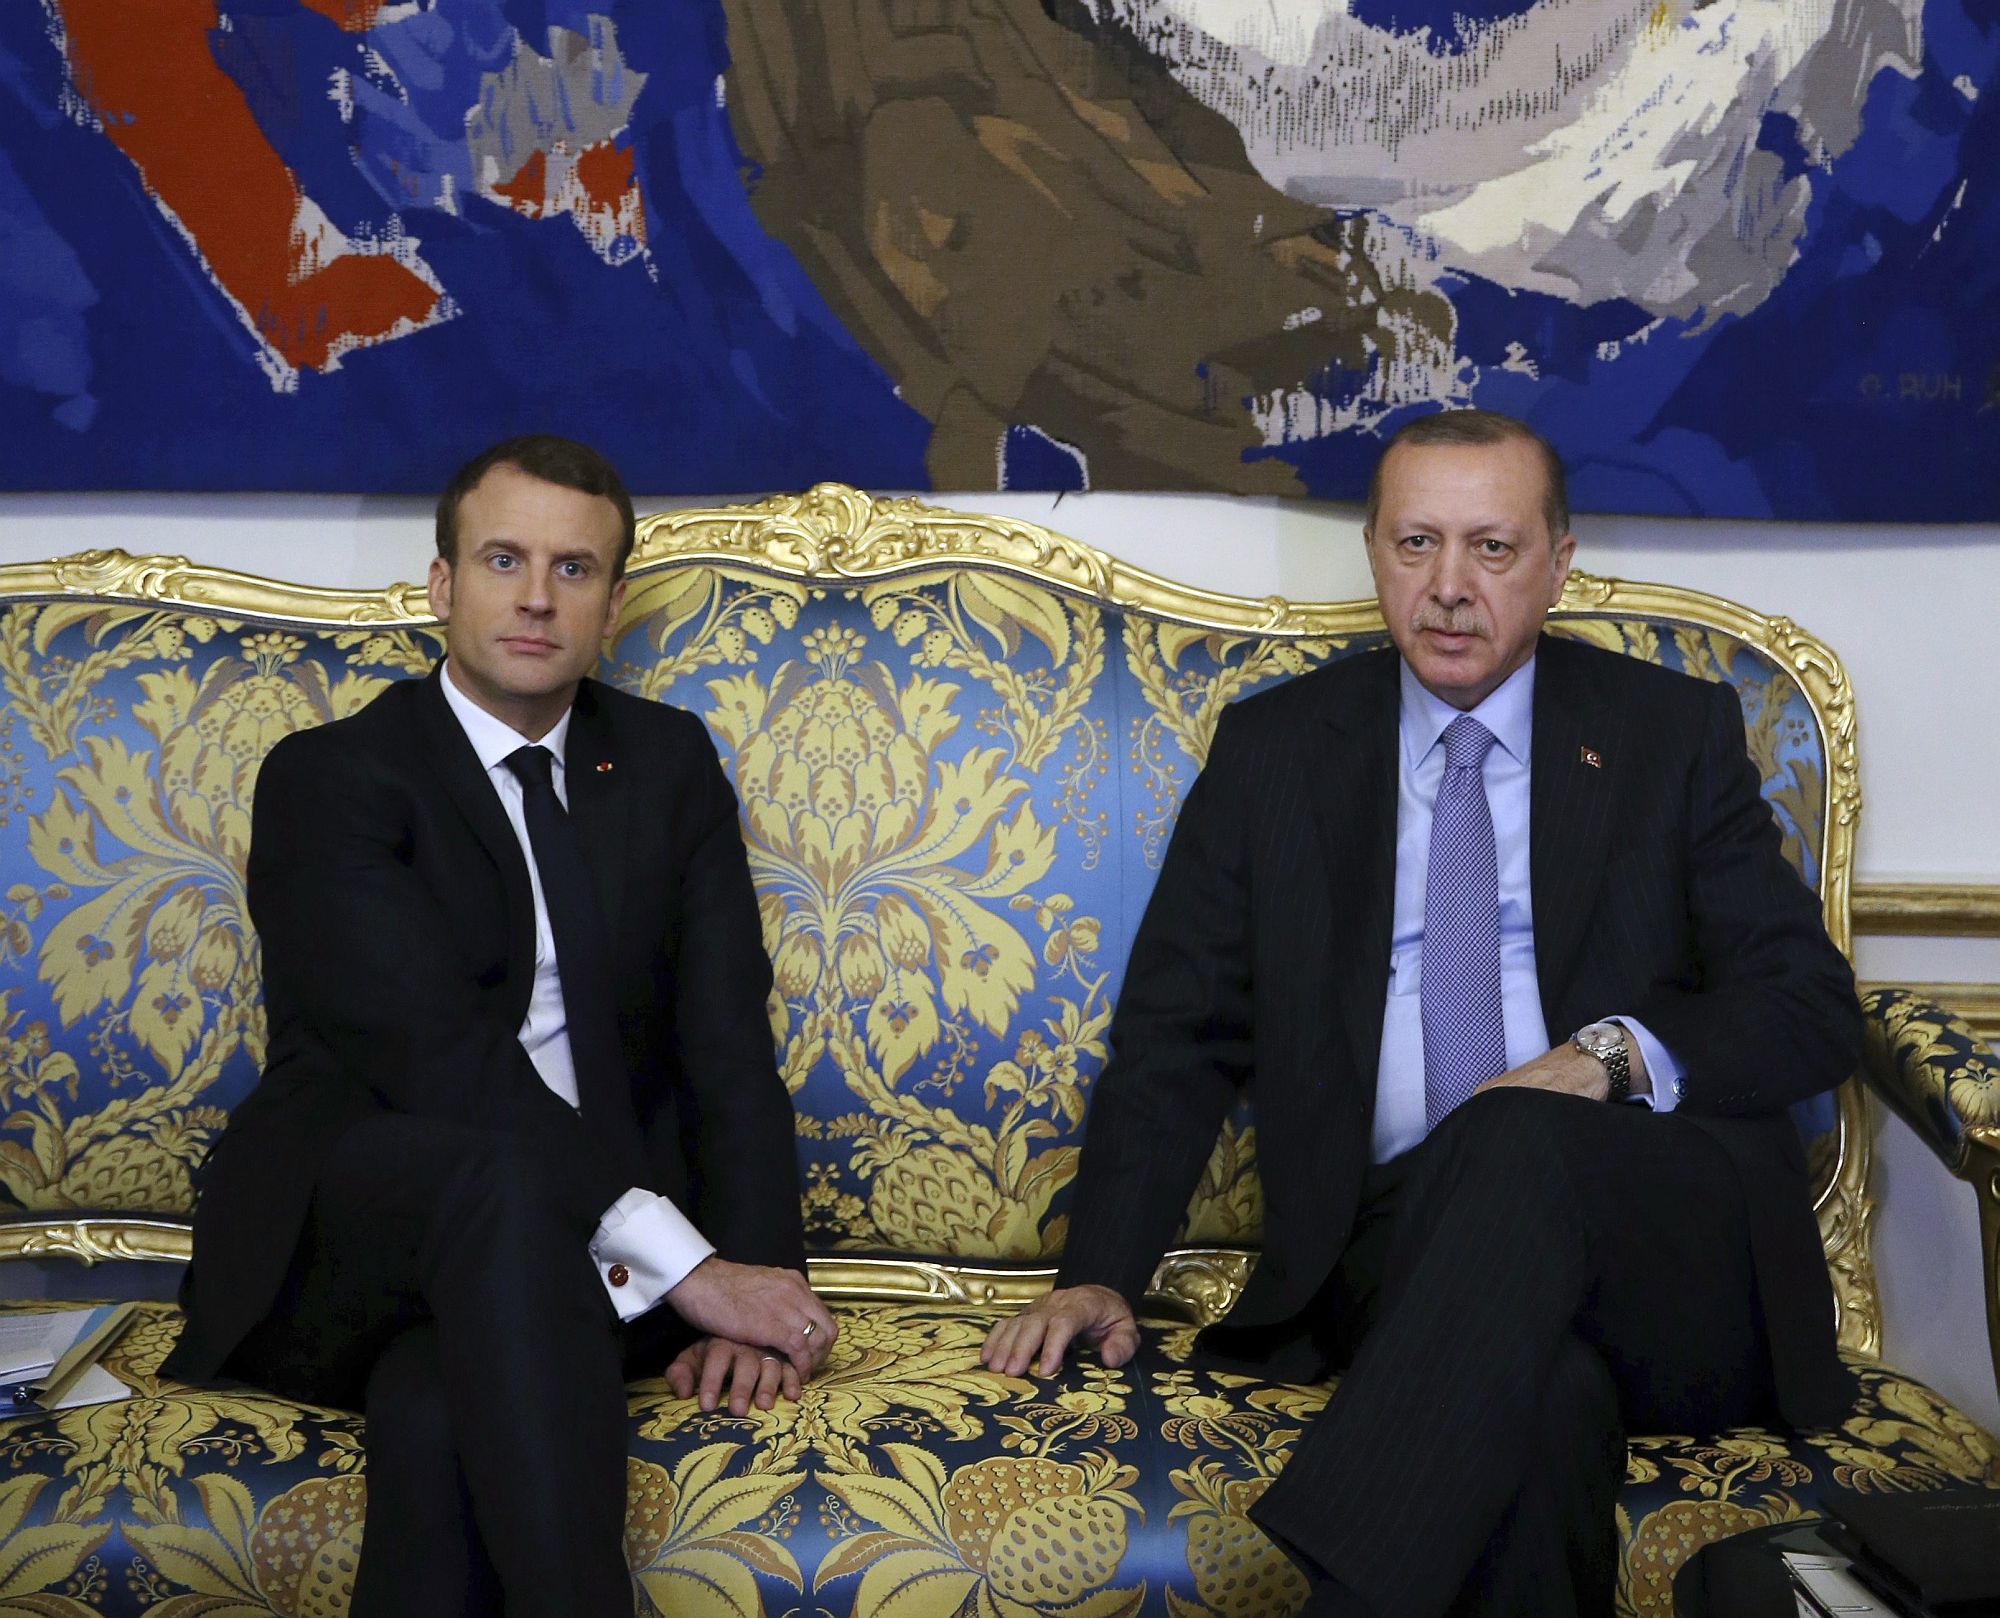 Emmanuel Macron francia elnök (b) fogadja a hivatalos látogatáson Franciaországban tartózkodó Recep Tayyip Erdogan török államfőt a párizsi államfői rezidencián, az Elysée-palotában 2018. január 5-én. (MTI/AP/Török elnöki sajtószolgálat pool/Yasin Bülbül)